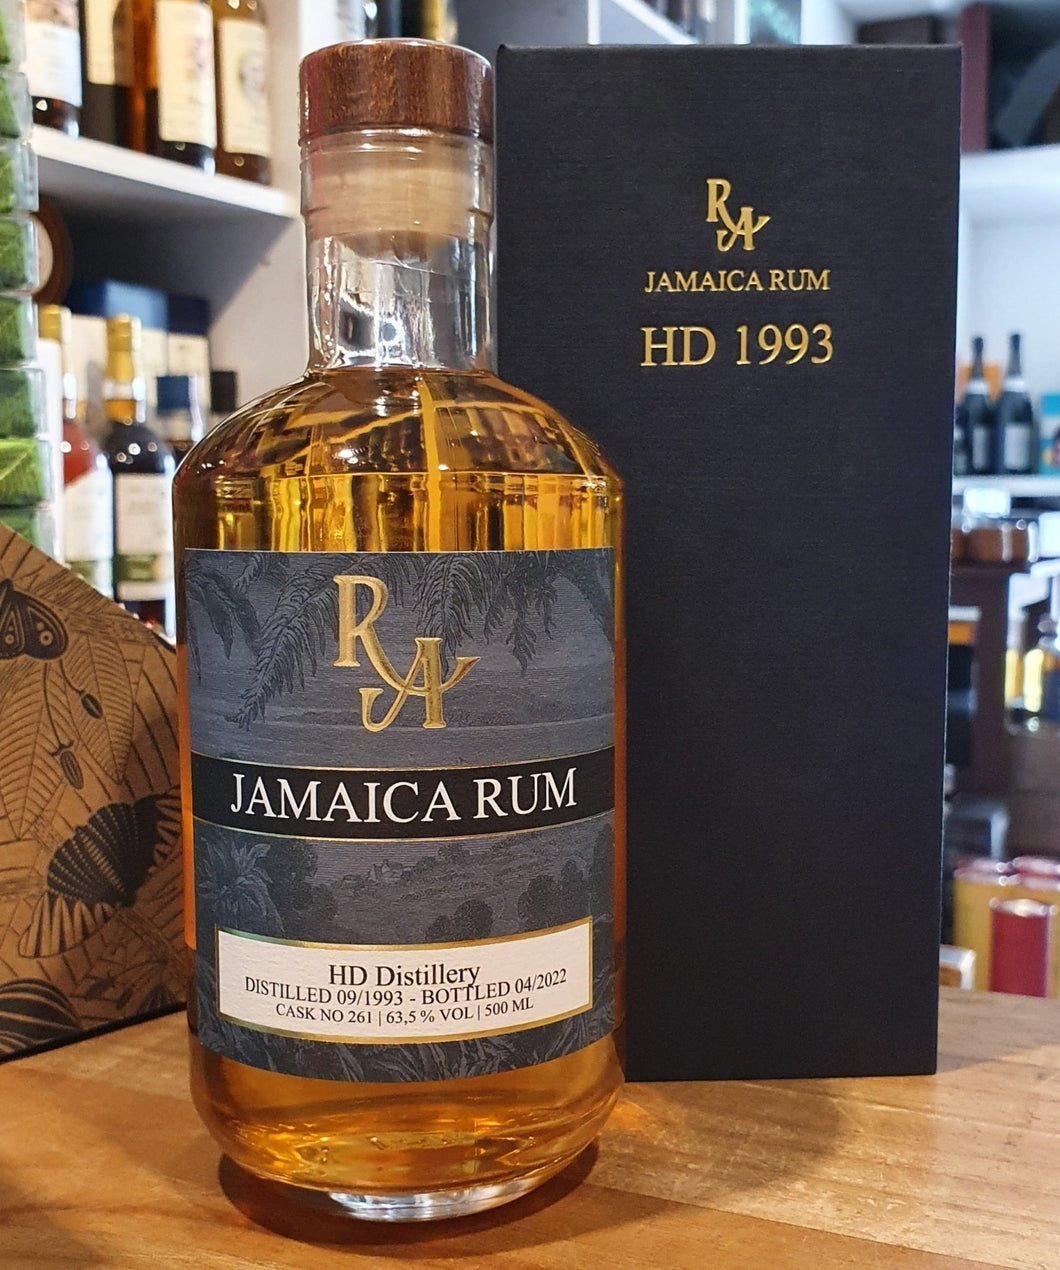 RA Jamaica HD 29y 1993 2022 Hampden Dist. 63,5% 0,5l Single cask Rum Artesanal #261 limitiert auf 168 Flaschen weltweit. Diese Einzelfassabfüllung reifte 29 Jahre, die meiste Zeit davon unter kontinentalklimatischen Bedingungen, in einem amerikanischem Weißeichen Fass. Auch wenn dieser Rum in einer nicht genannten Brennerei destilliert wurde, dürfte jeder Rum Kenner wissen welche Destille bei dem Kürzel HD gemeint ist. Der Single Cask Rum